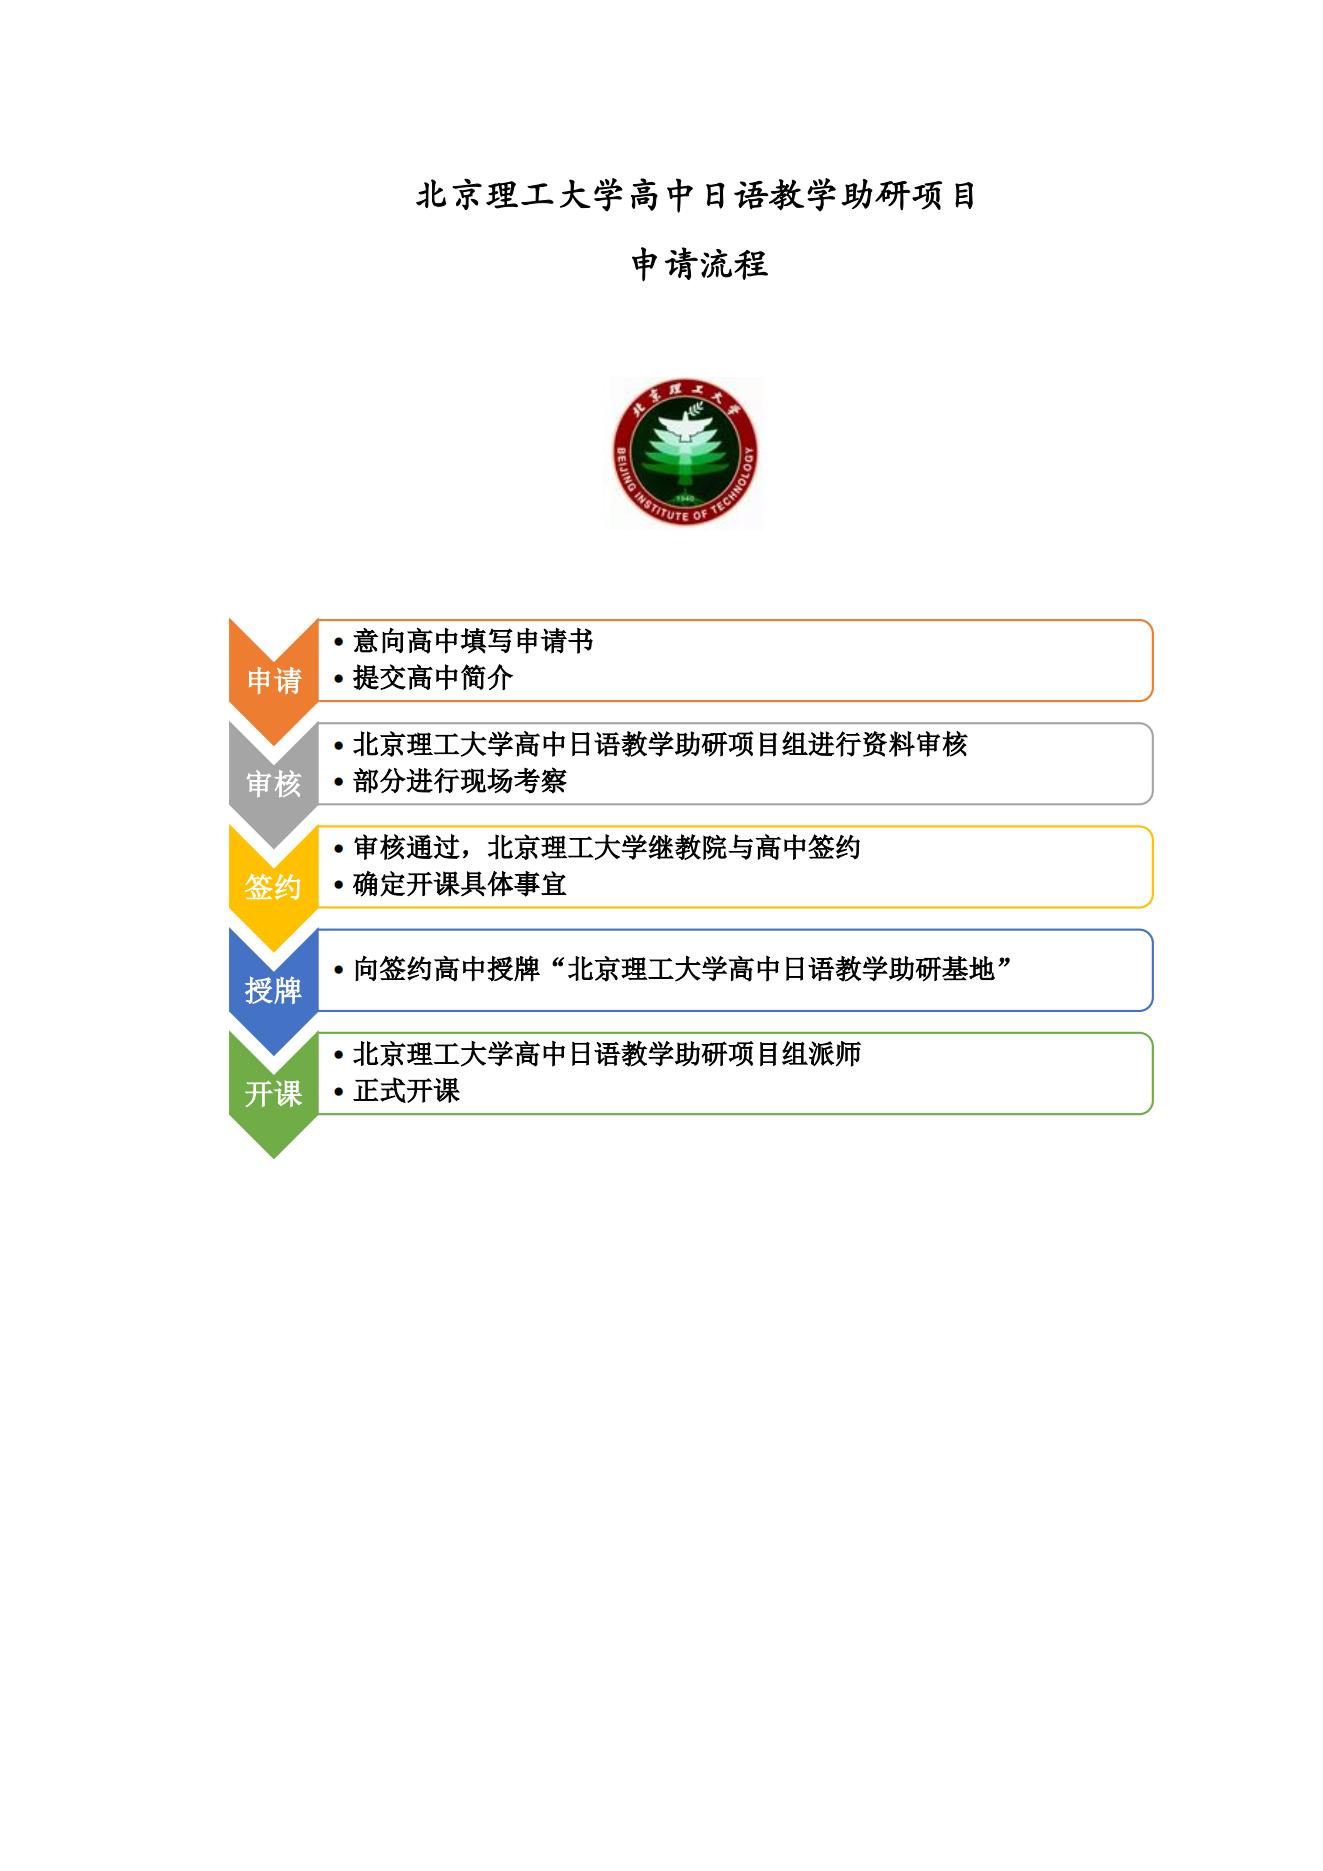 2北理高中日语助研项目申请流程（高中版）_00.jpg